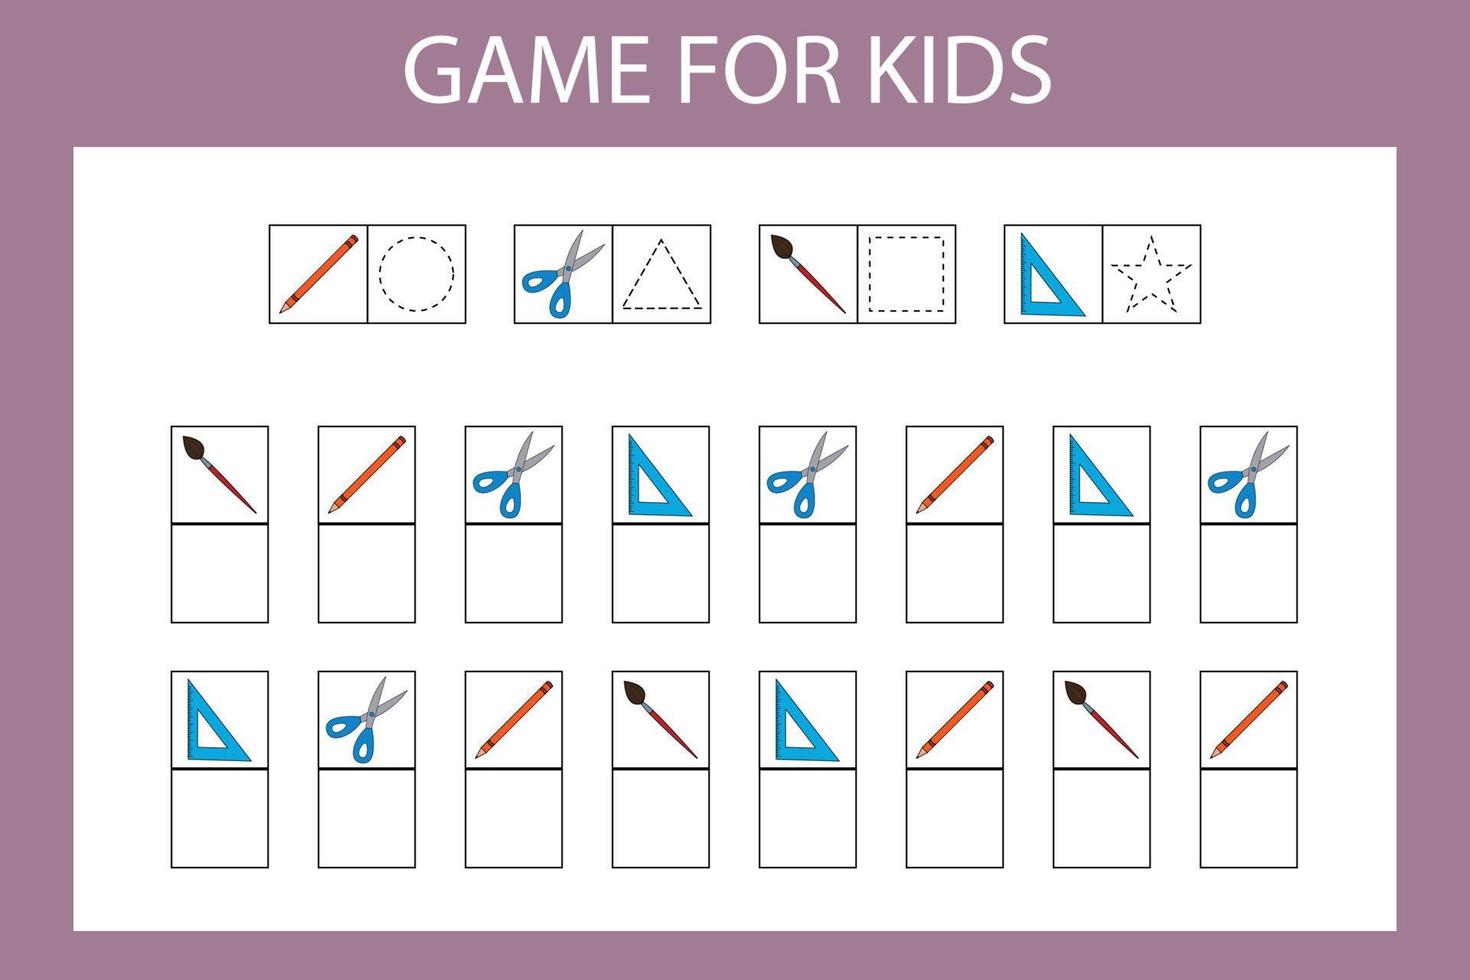 juego educativo para niños en edad preescolar. ilustración vectorial ingrese el carácter deseado en las celdas de acuerdo con la imagen. vector